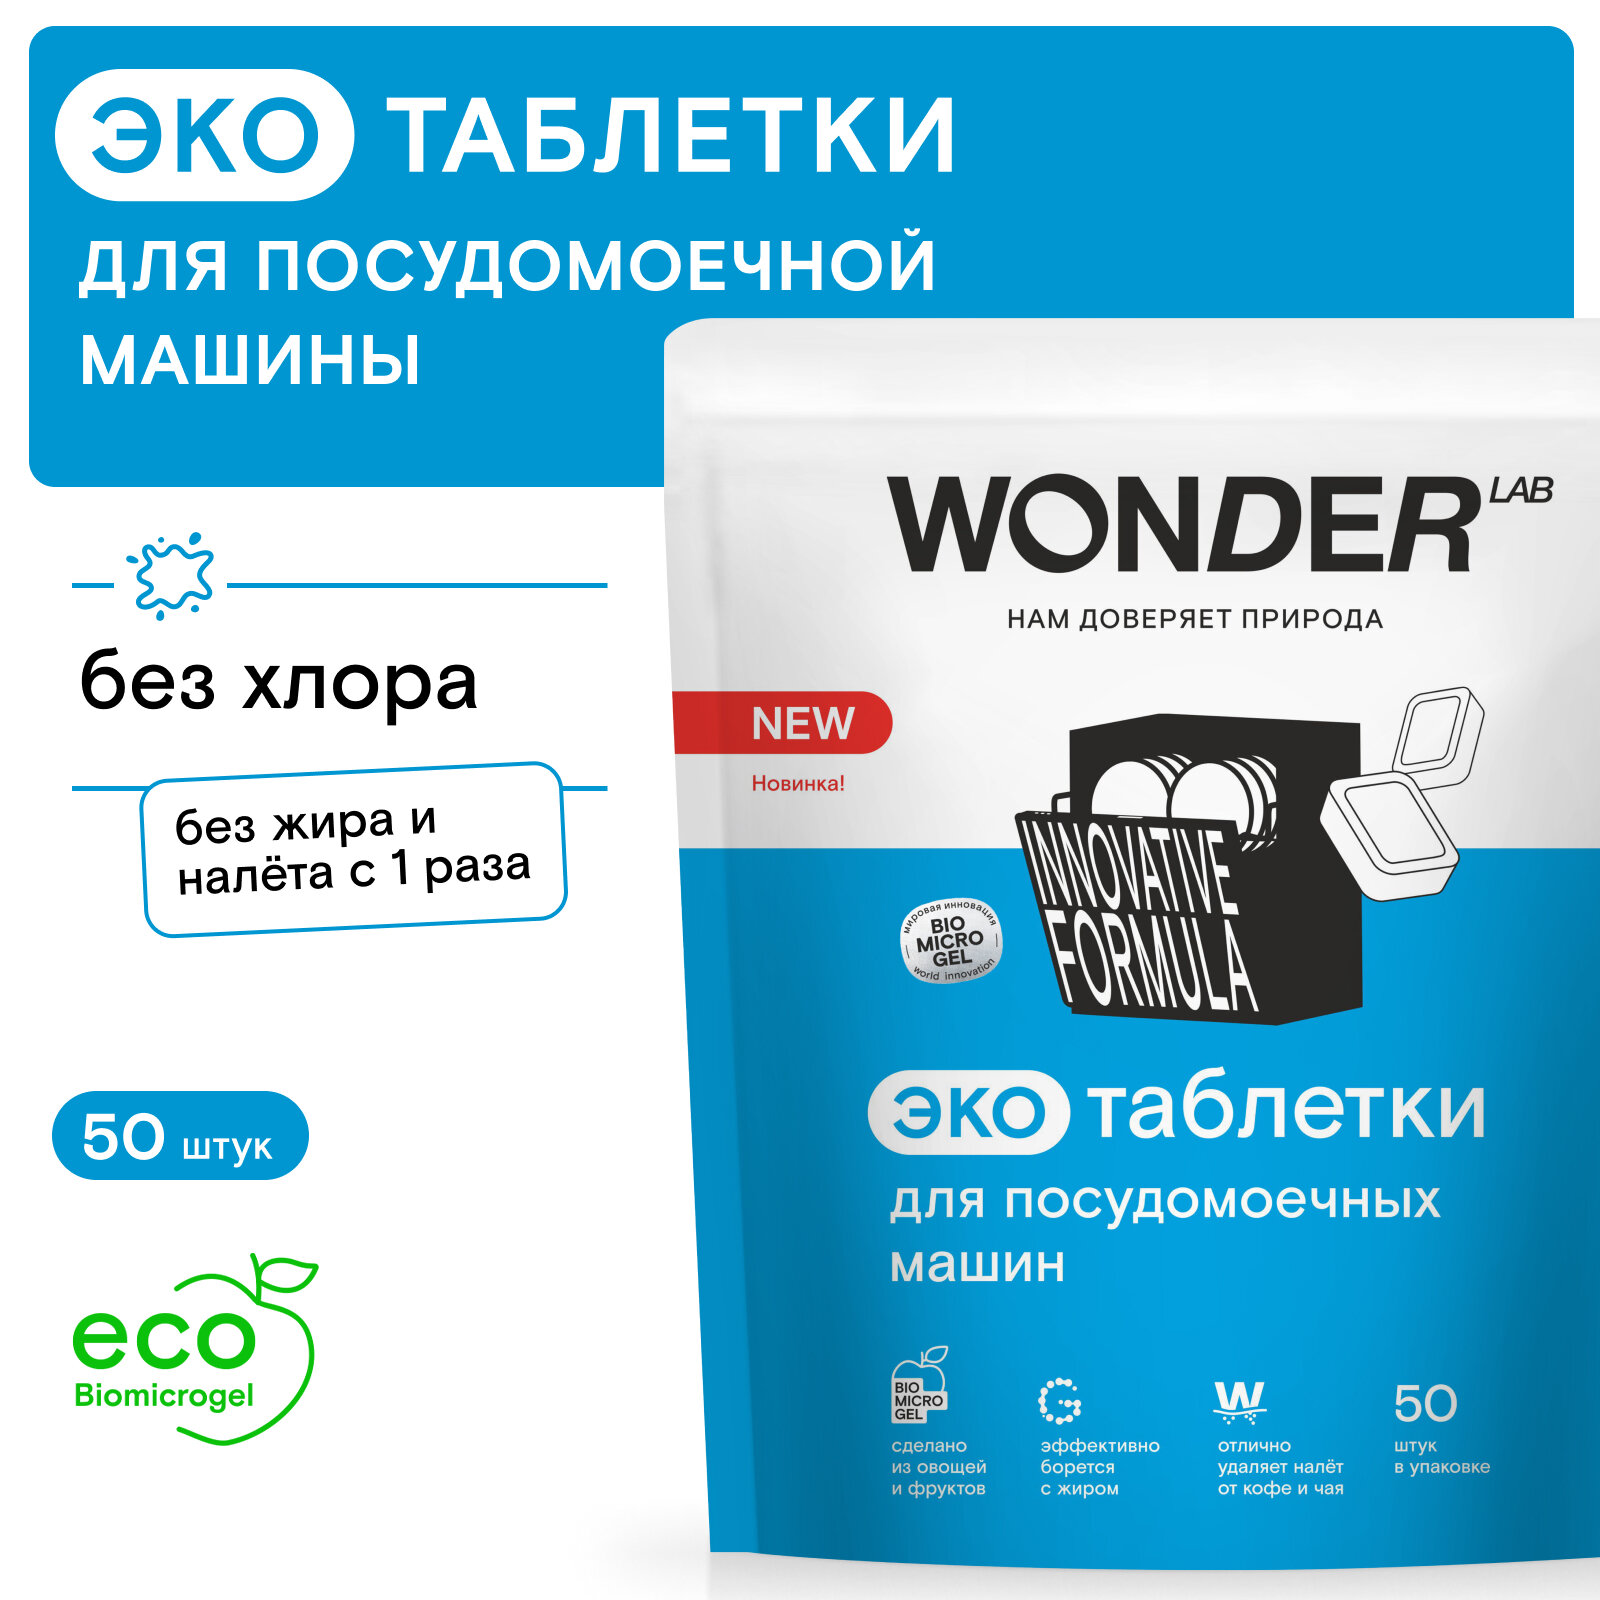 Таблетки для посудомоечных машин Wonder Lab 50 ук